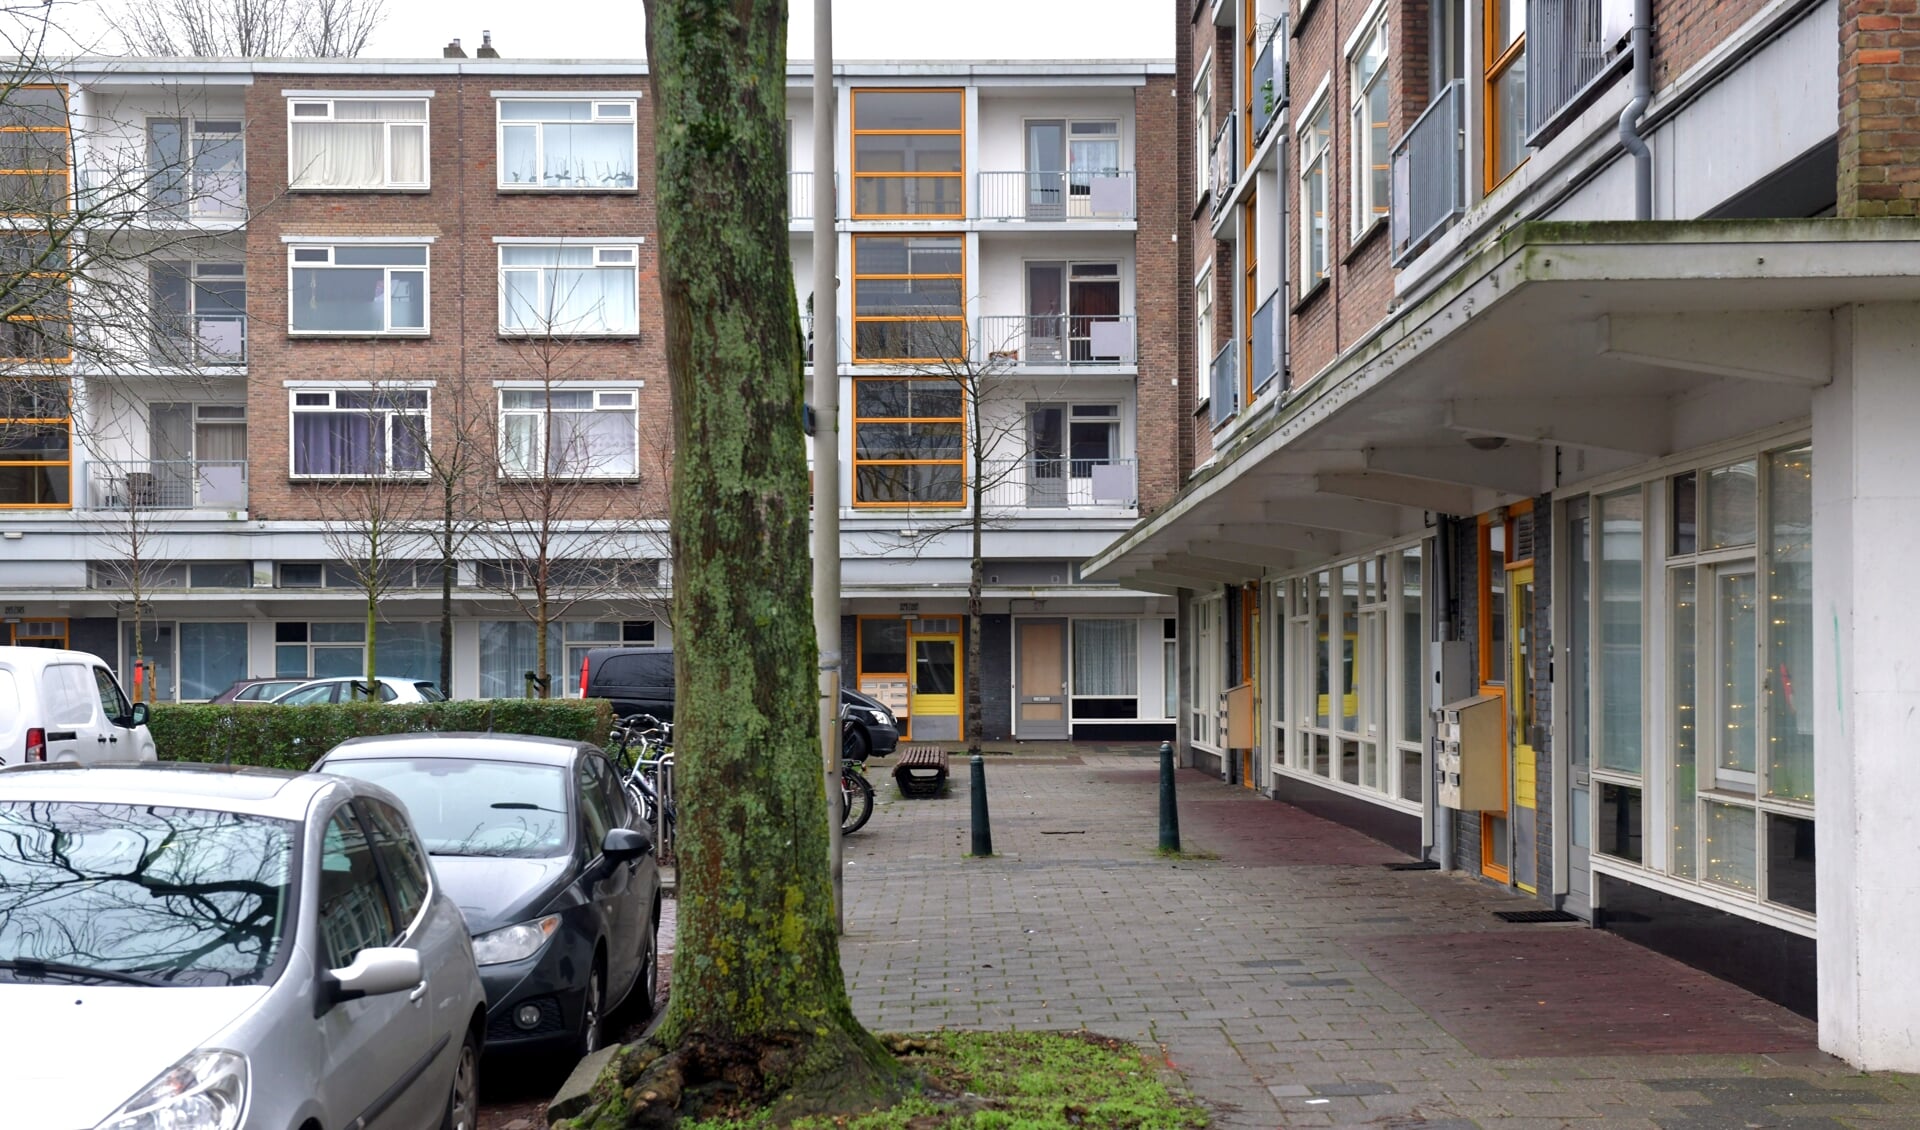 In de Dreven, Gaarden en Zichten worden 2000 woningen gesloopt. GroenLinks vindt dat bewoners de kans moeten krijgen om hierover mee te praten. 